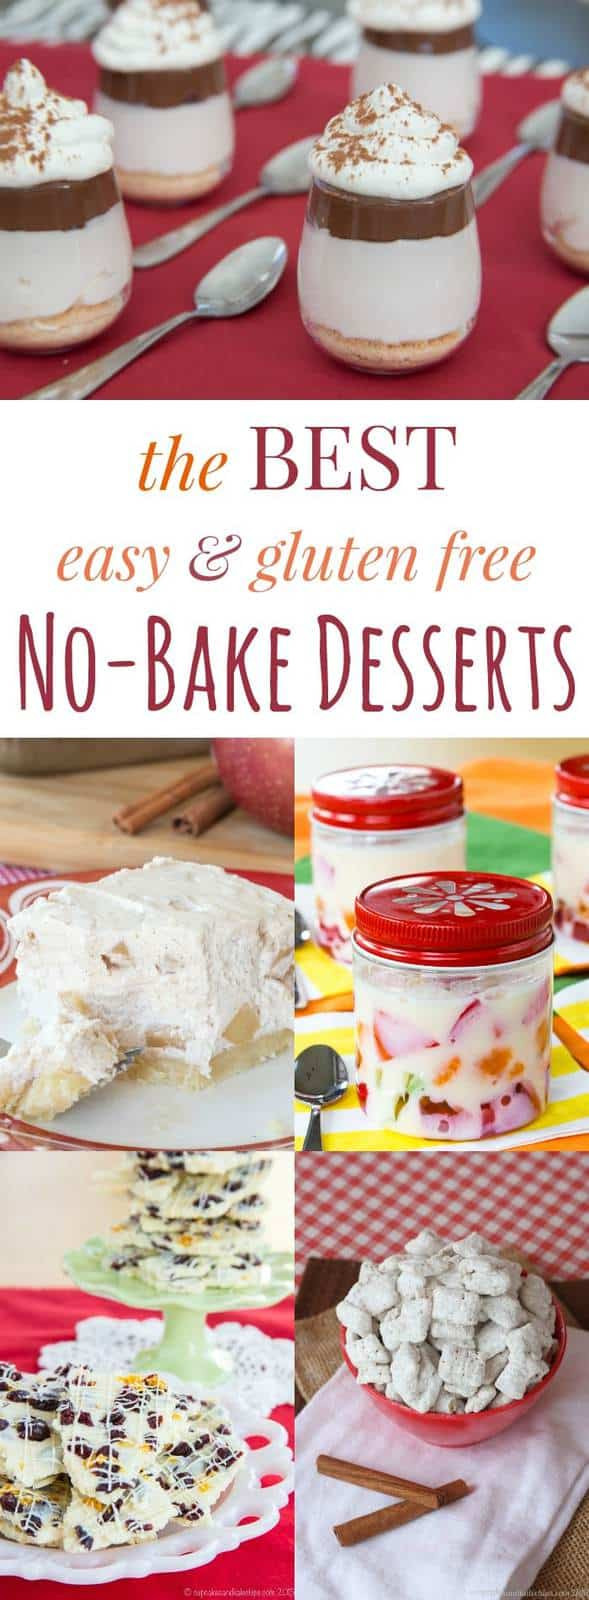 Gluten Free No Bake Desserts
 Best Gluten Free No Bake Dessert Recipes Cupcakes & Kale